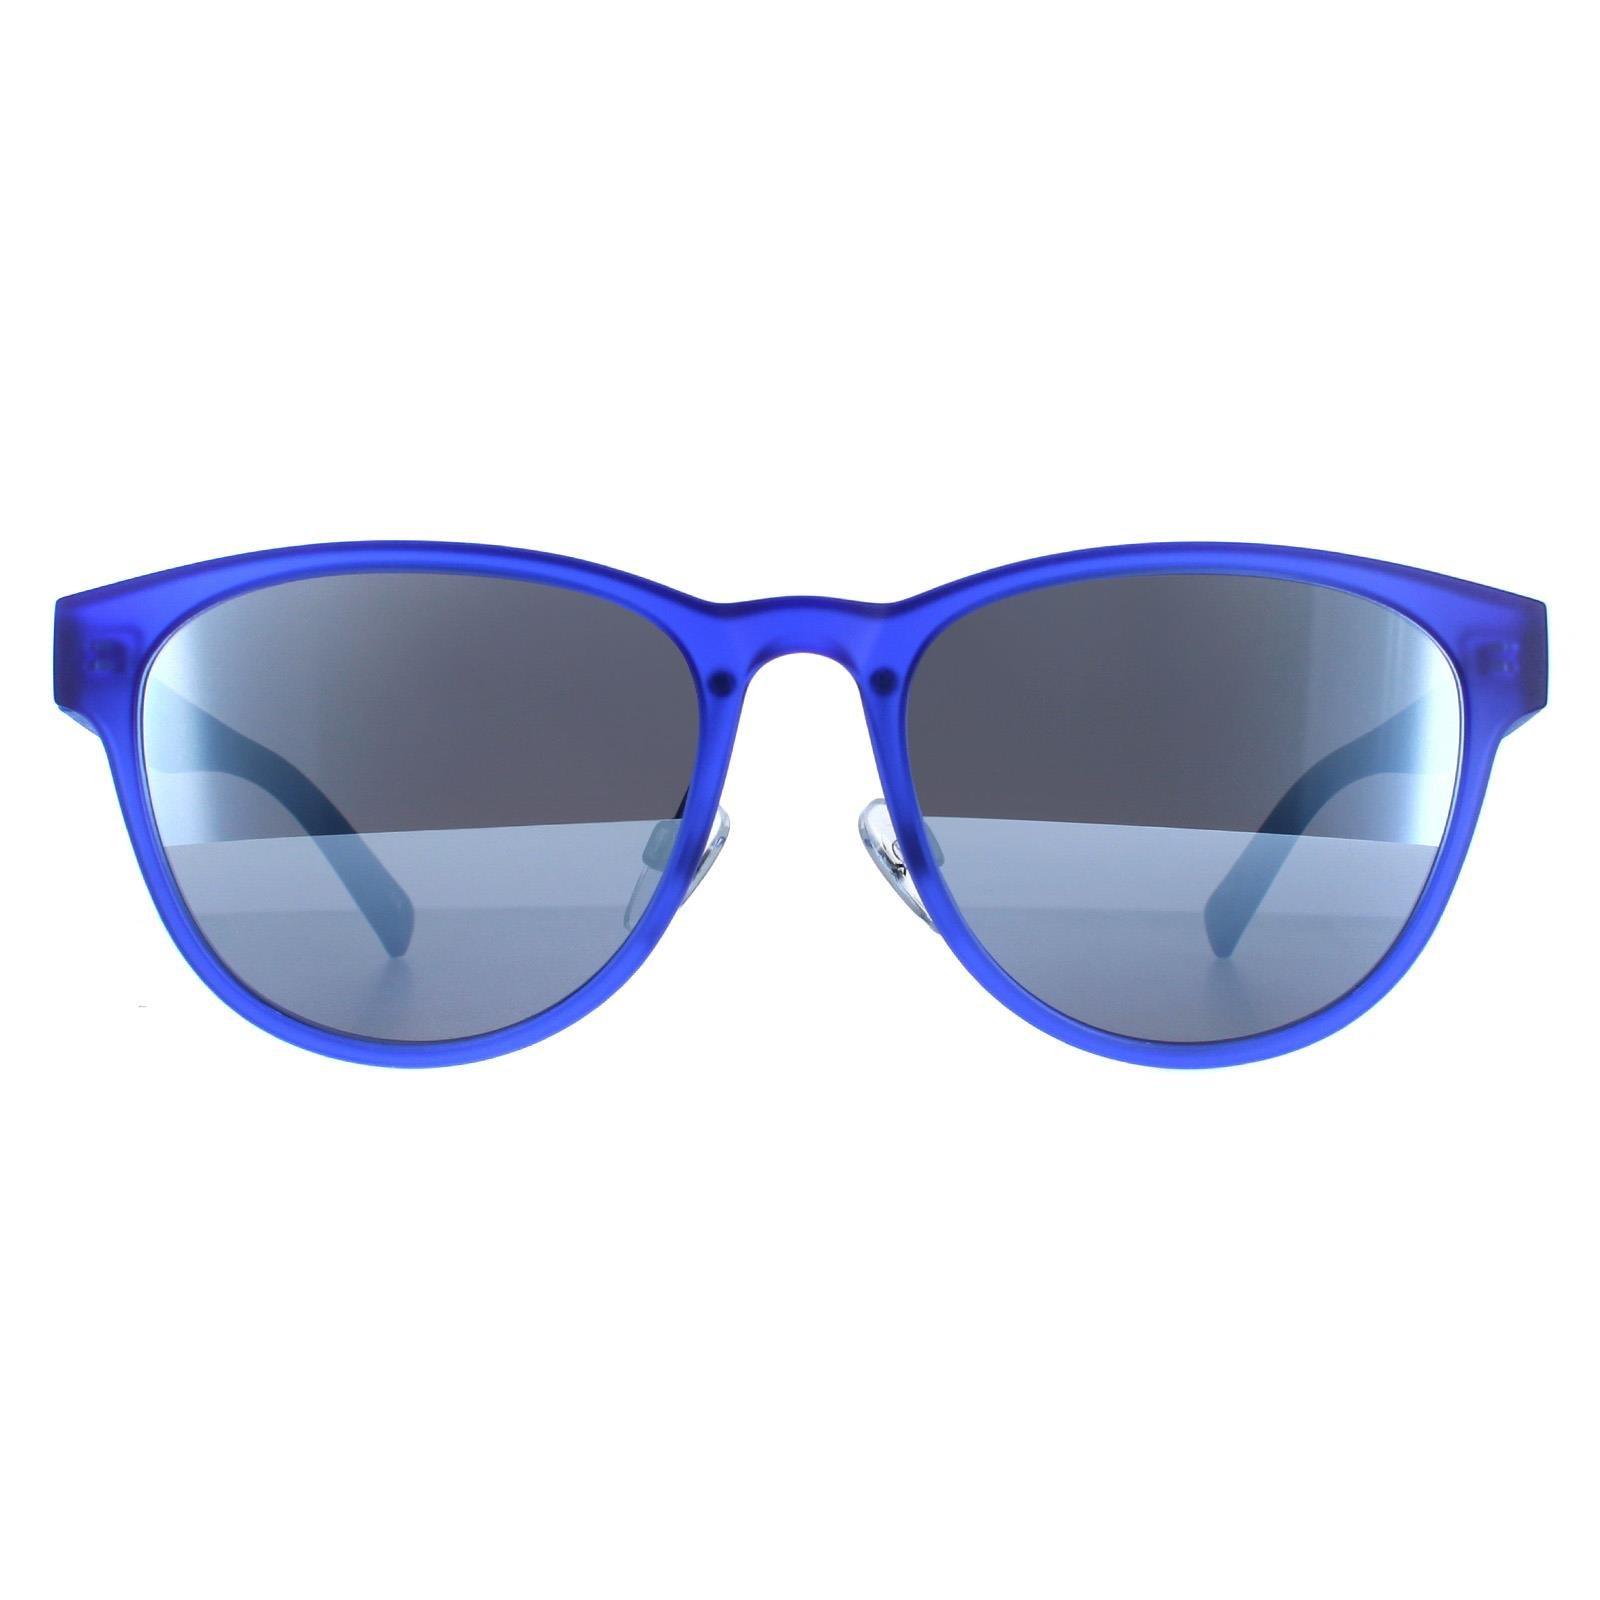 Овал Синий Серебристый Зеркальный BE5011 United Colors of Benetton, синий темно синие зеркальные солнцезащитные очки aviator gun porsche design серый